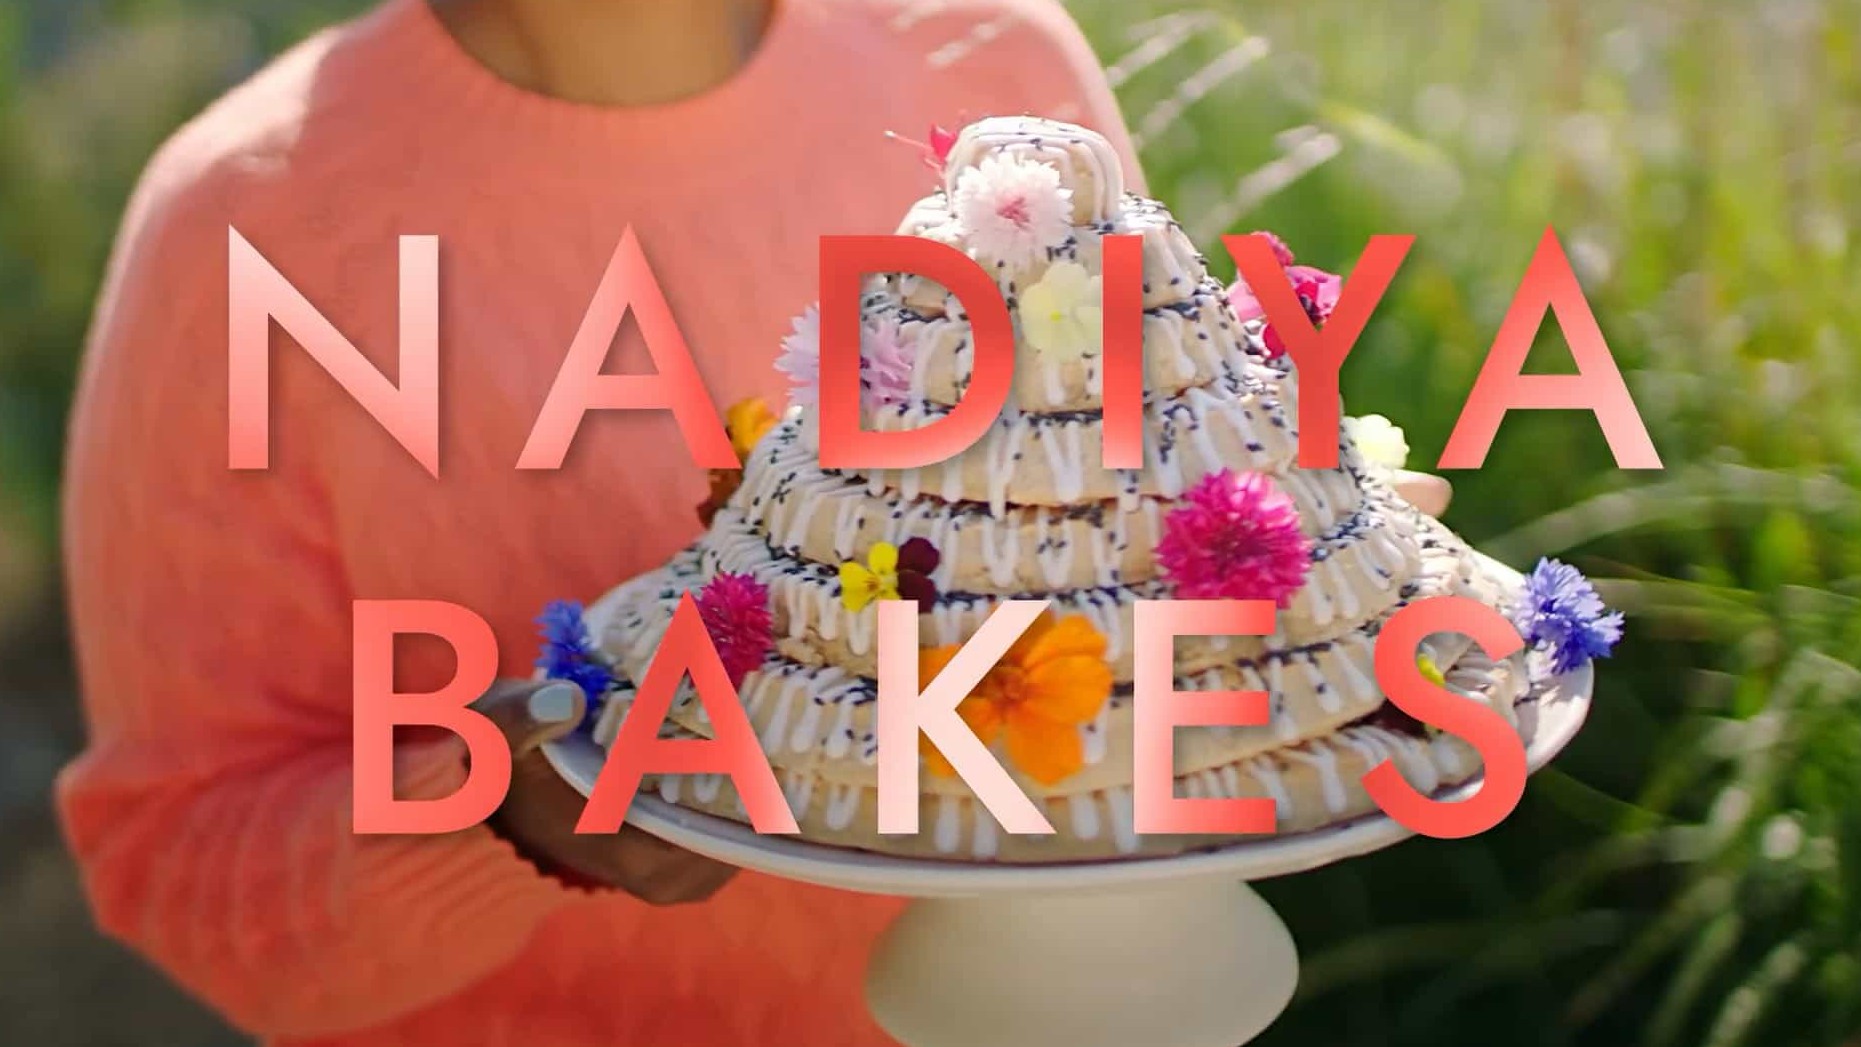 美食纪录片/世界美食系列《纳迪雅的烘焙世界 Nadiya Bakes 2020》全8集 英语内嵌中英双字 1080P高清下载